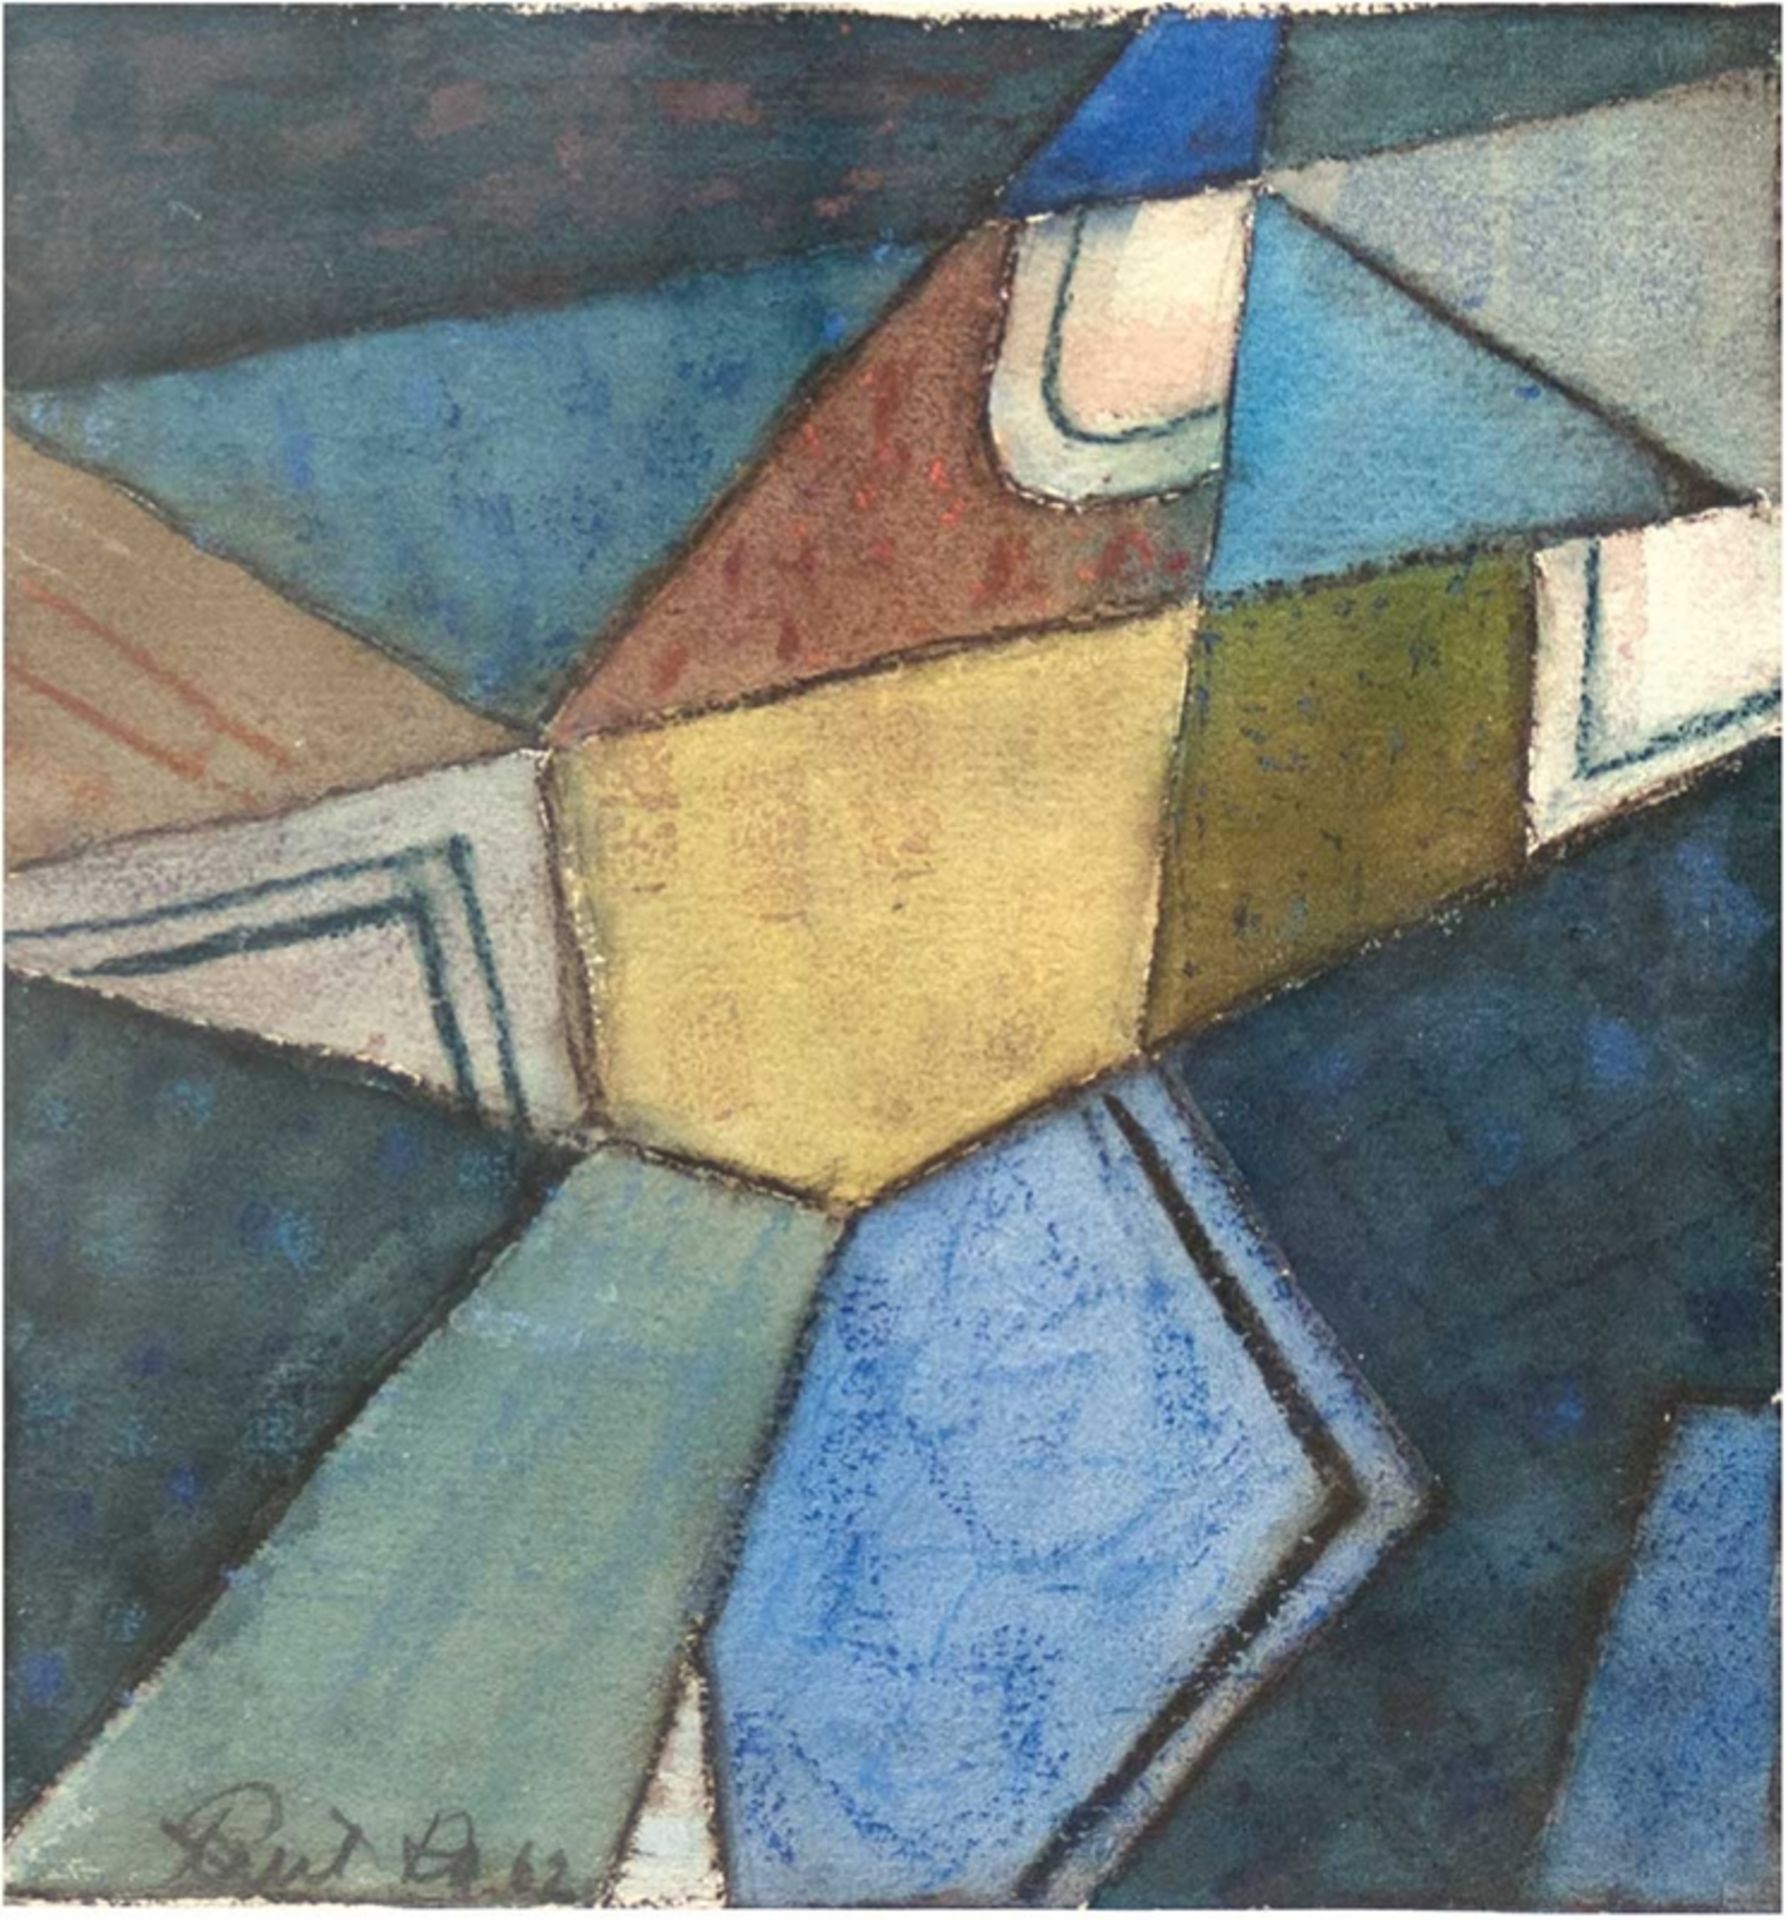 "Abstrakte Komposition", Aquarell, unleserl. sign. und dat. 62 u.l., 26x25 cm, hinter Glas im Passe